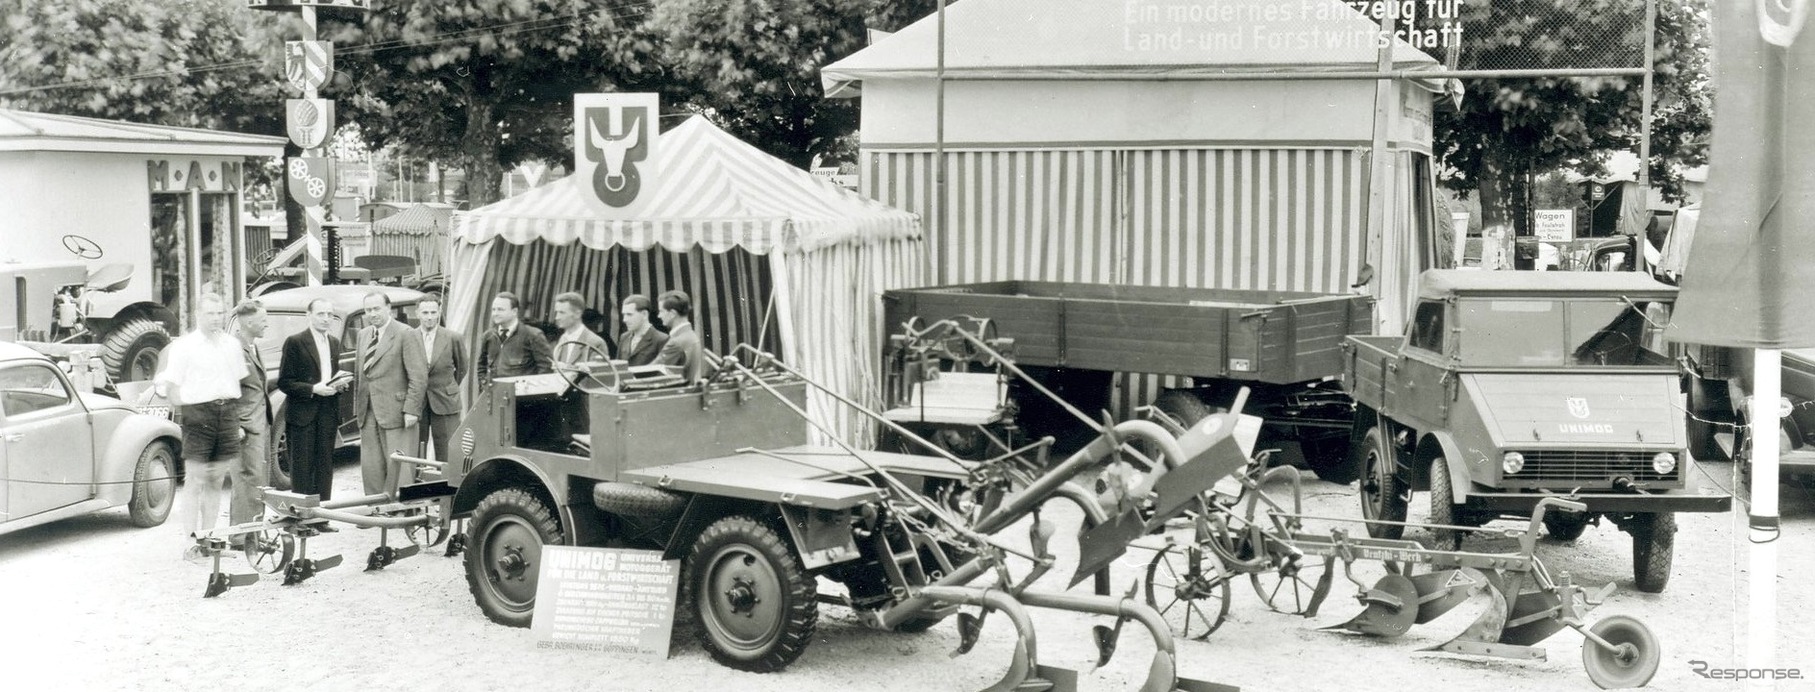 1948年のDLG展示会で初めて一般公開されたウニモグ